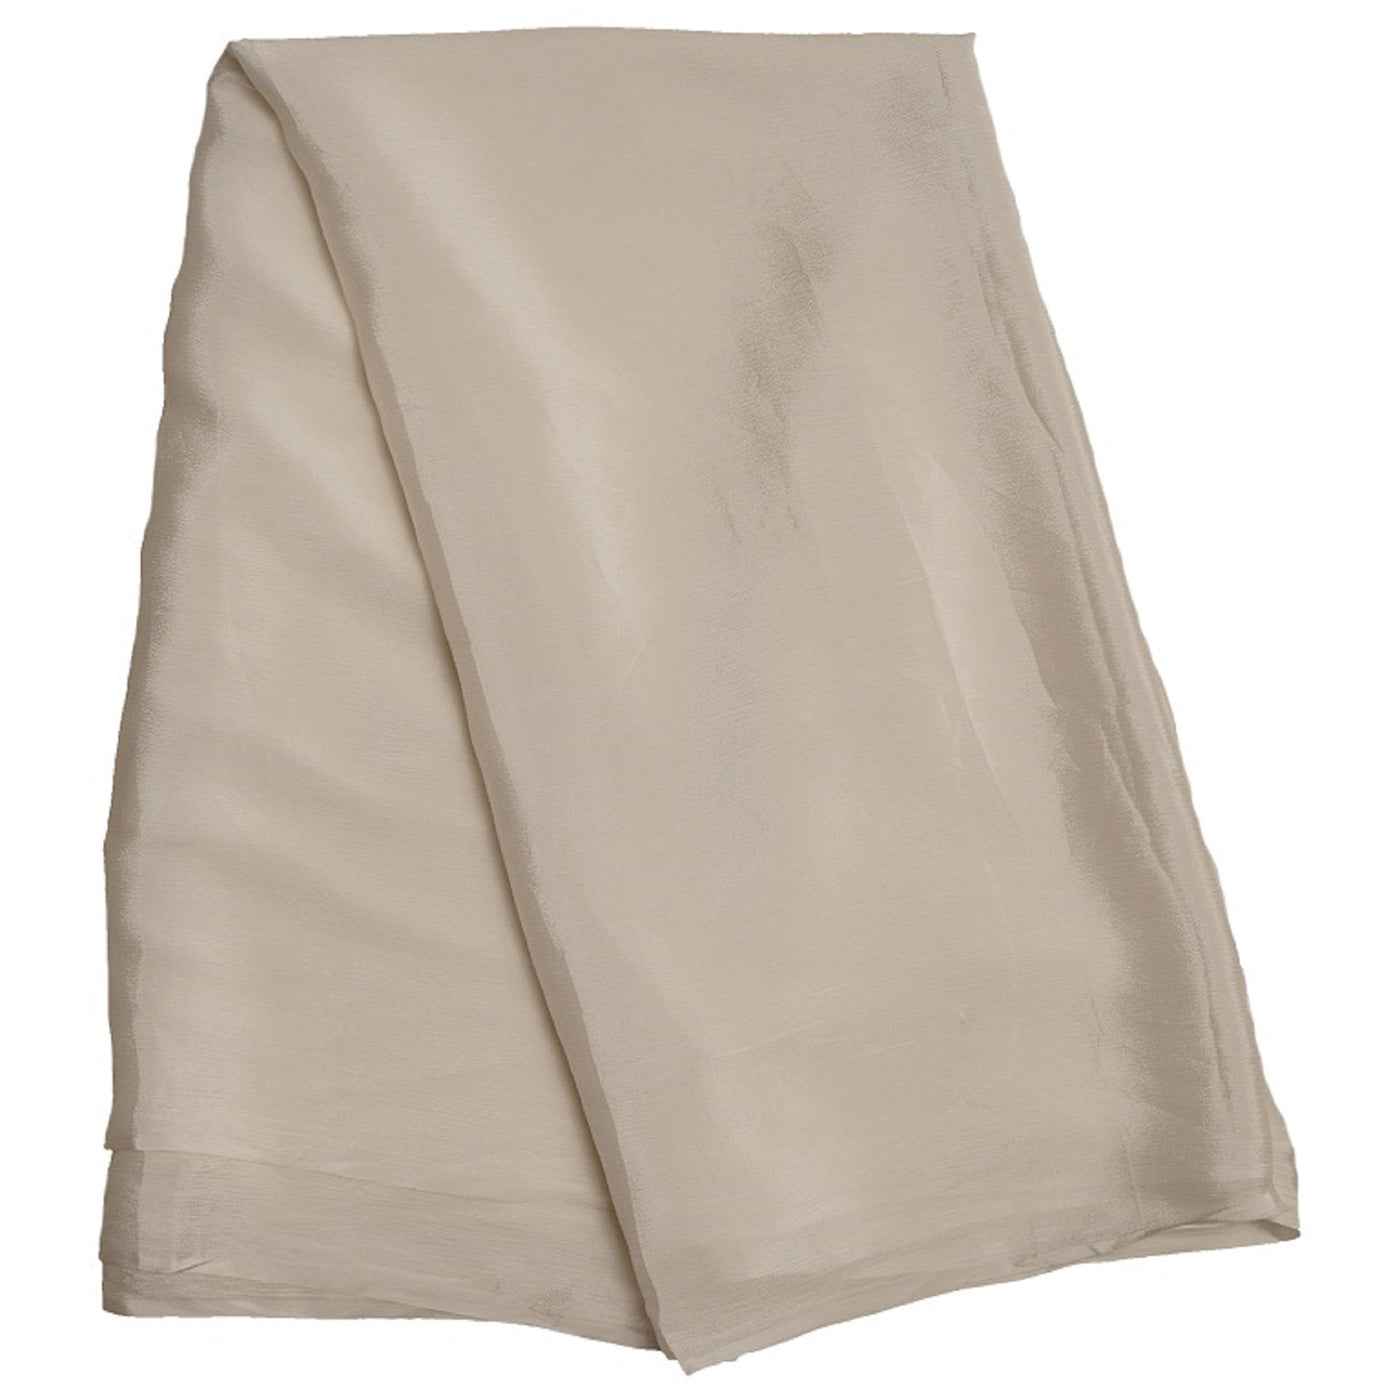 White Plain Dyeable Viscose Chinon Chiffon Fabric (Wholesale)